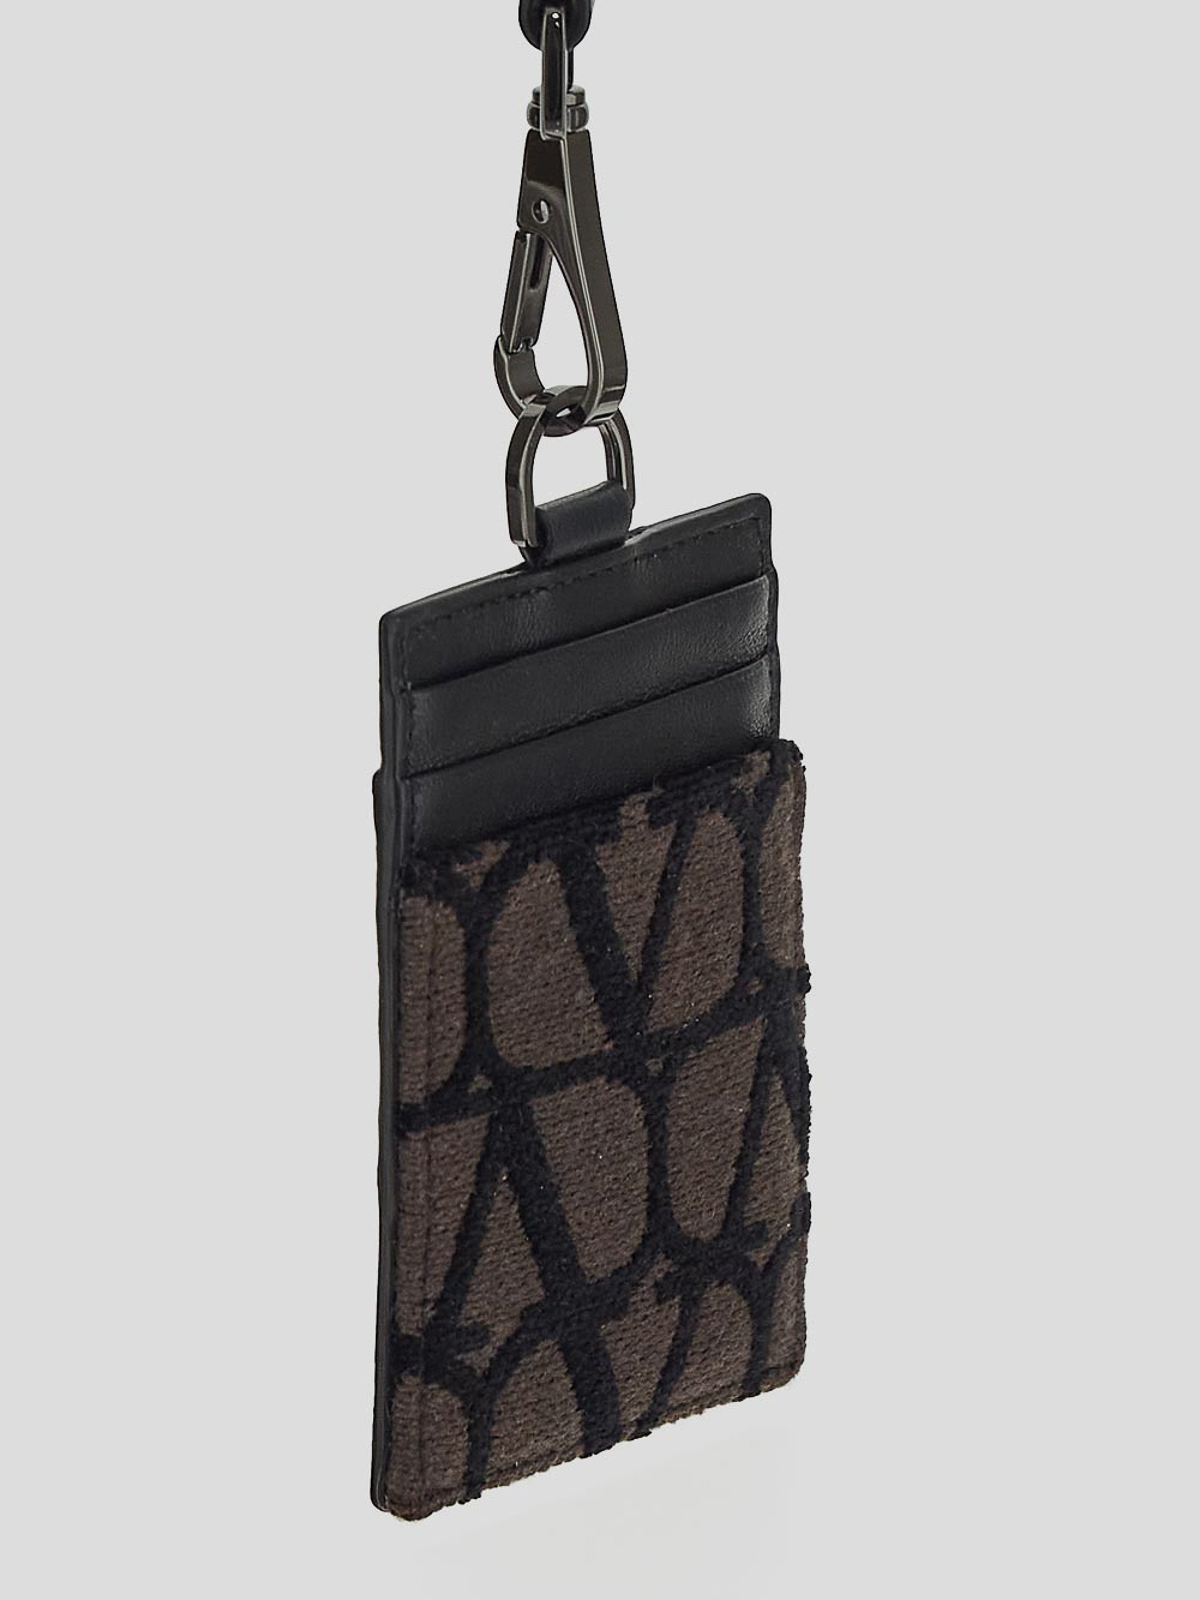 Cartera / Bolso / Monedero color Negro - Louis Vuitton